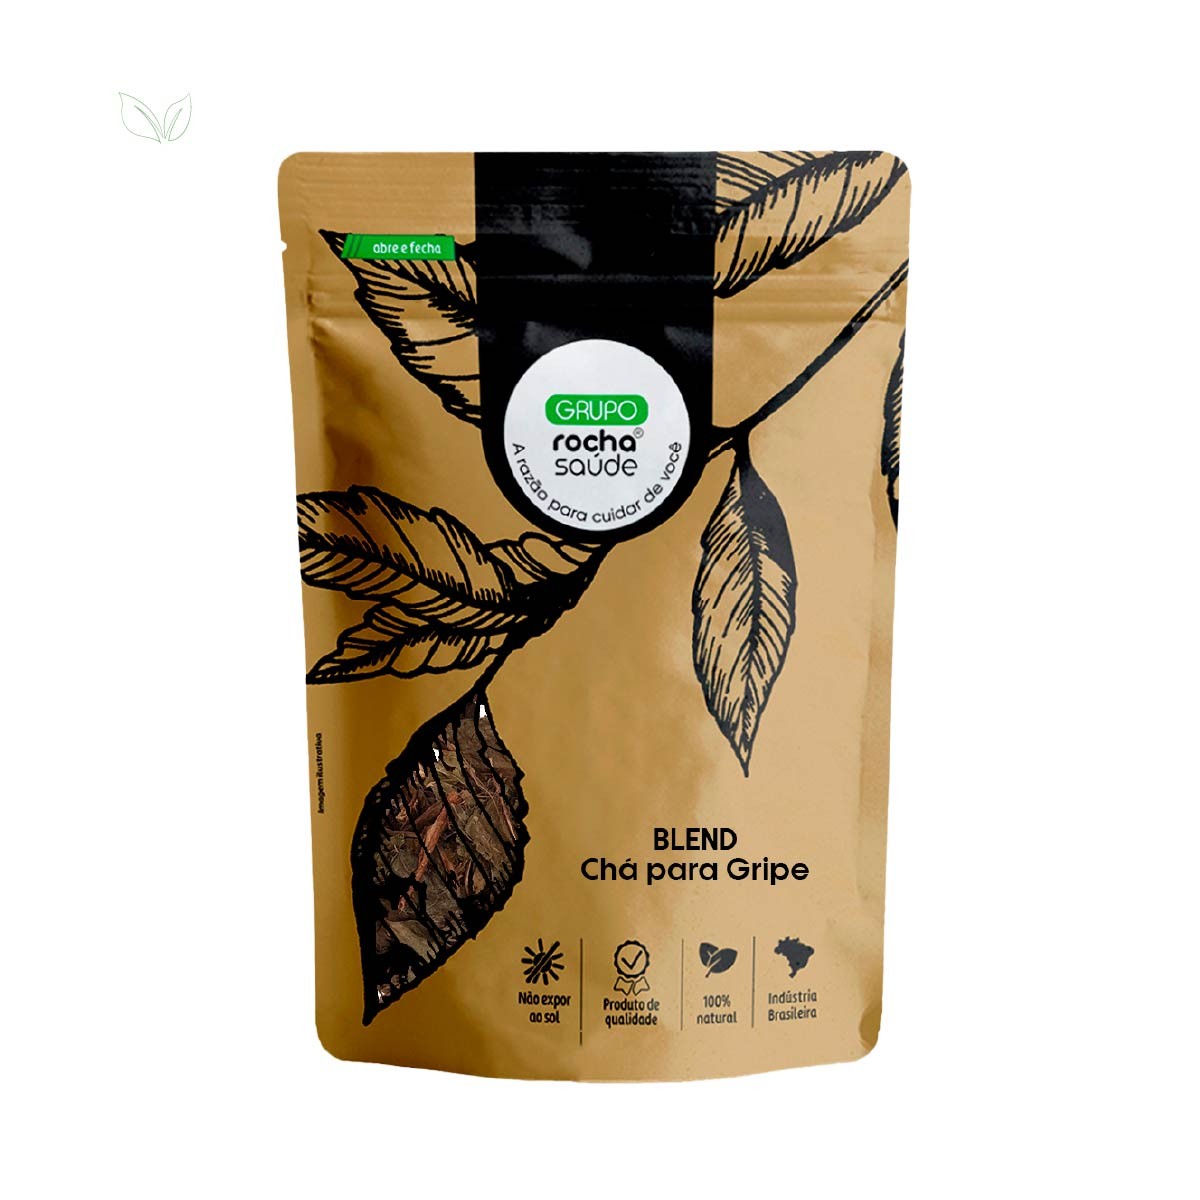 Blend - Chá para Gripe - 100% Natural - Alta Qualidade